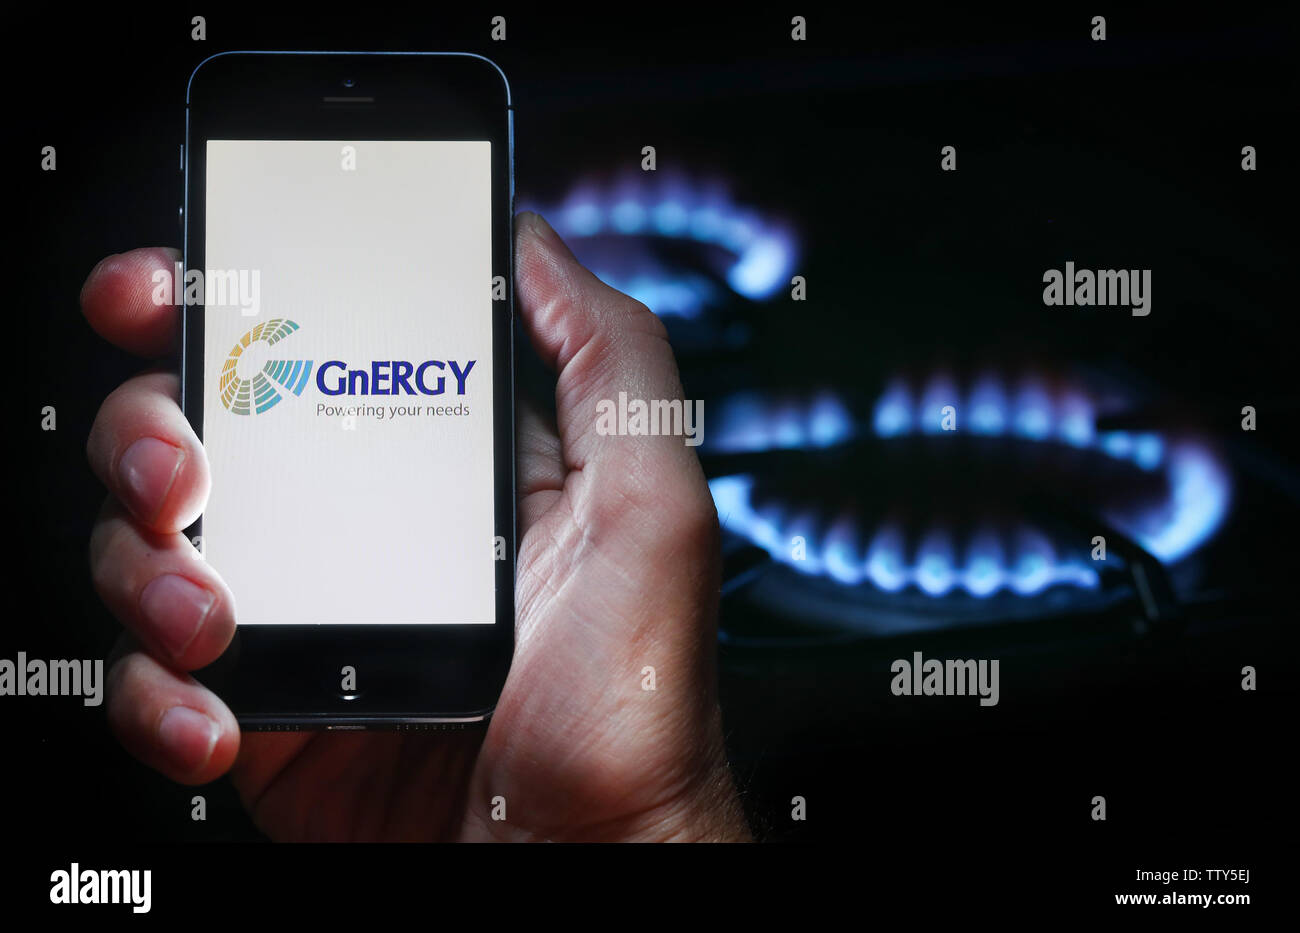 Un homme à la recherche sur le site web logo pour société GnERGY d'énergie sur son téléphone devant sa cuisinière à gaz (usage éditorial uniquement) Banque D'Images